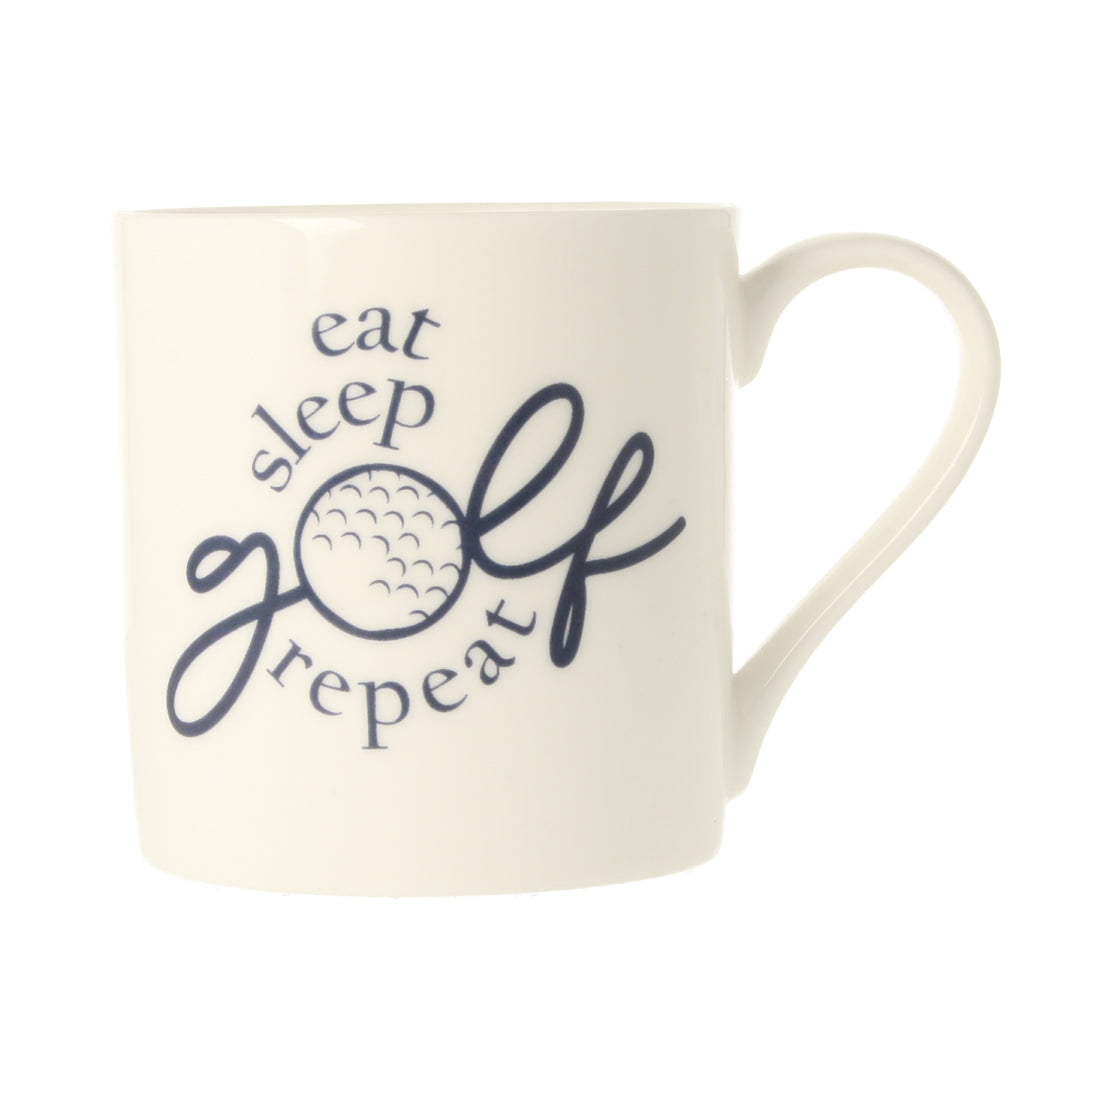 Eat Sleep Golf Repeat Mug